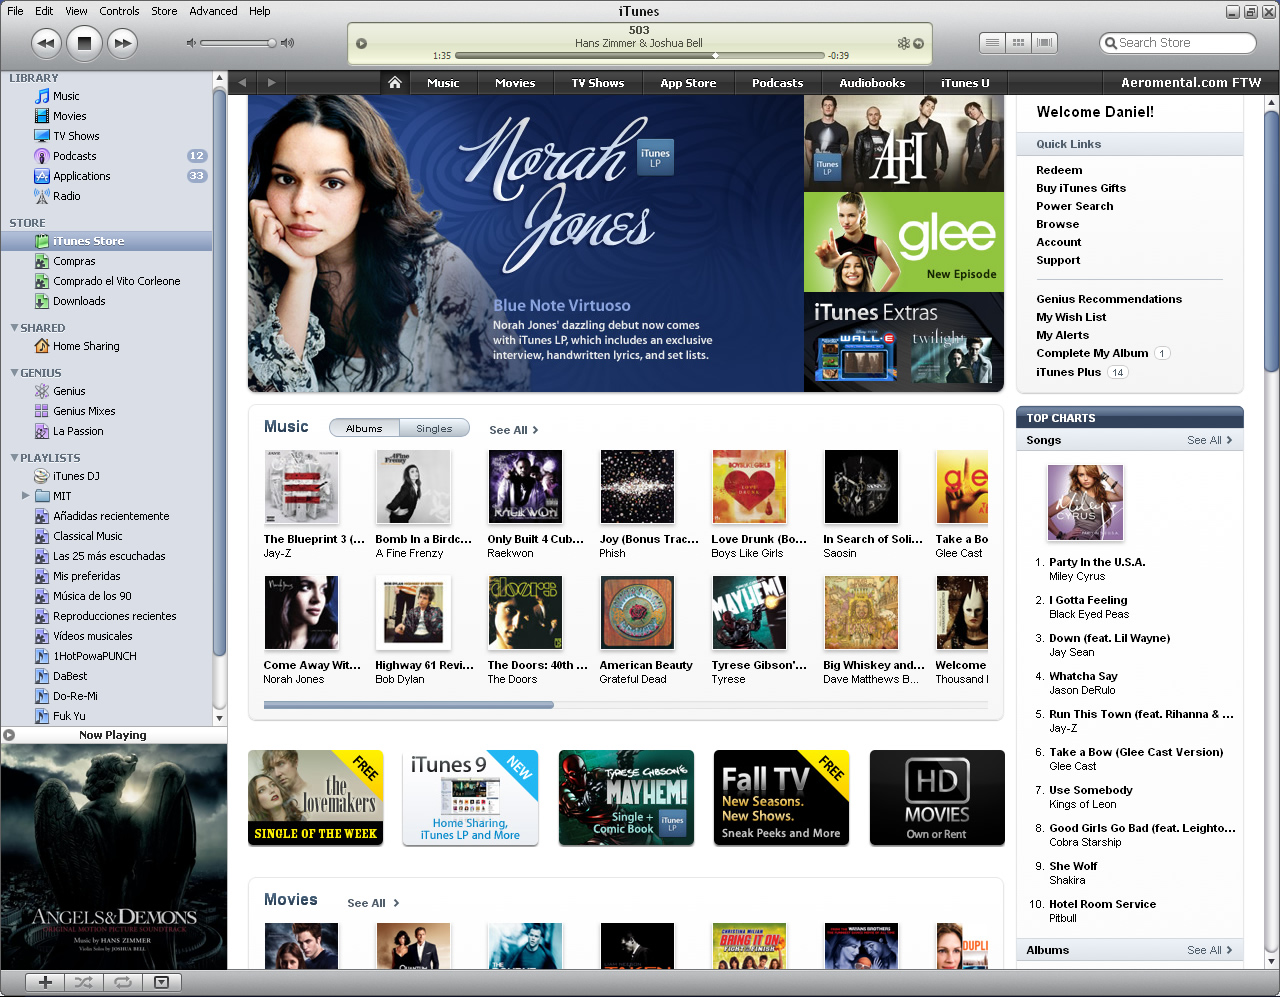 iTunes Store iTunes 9